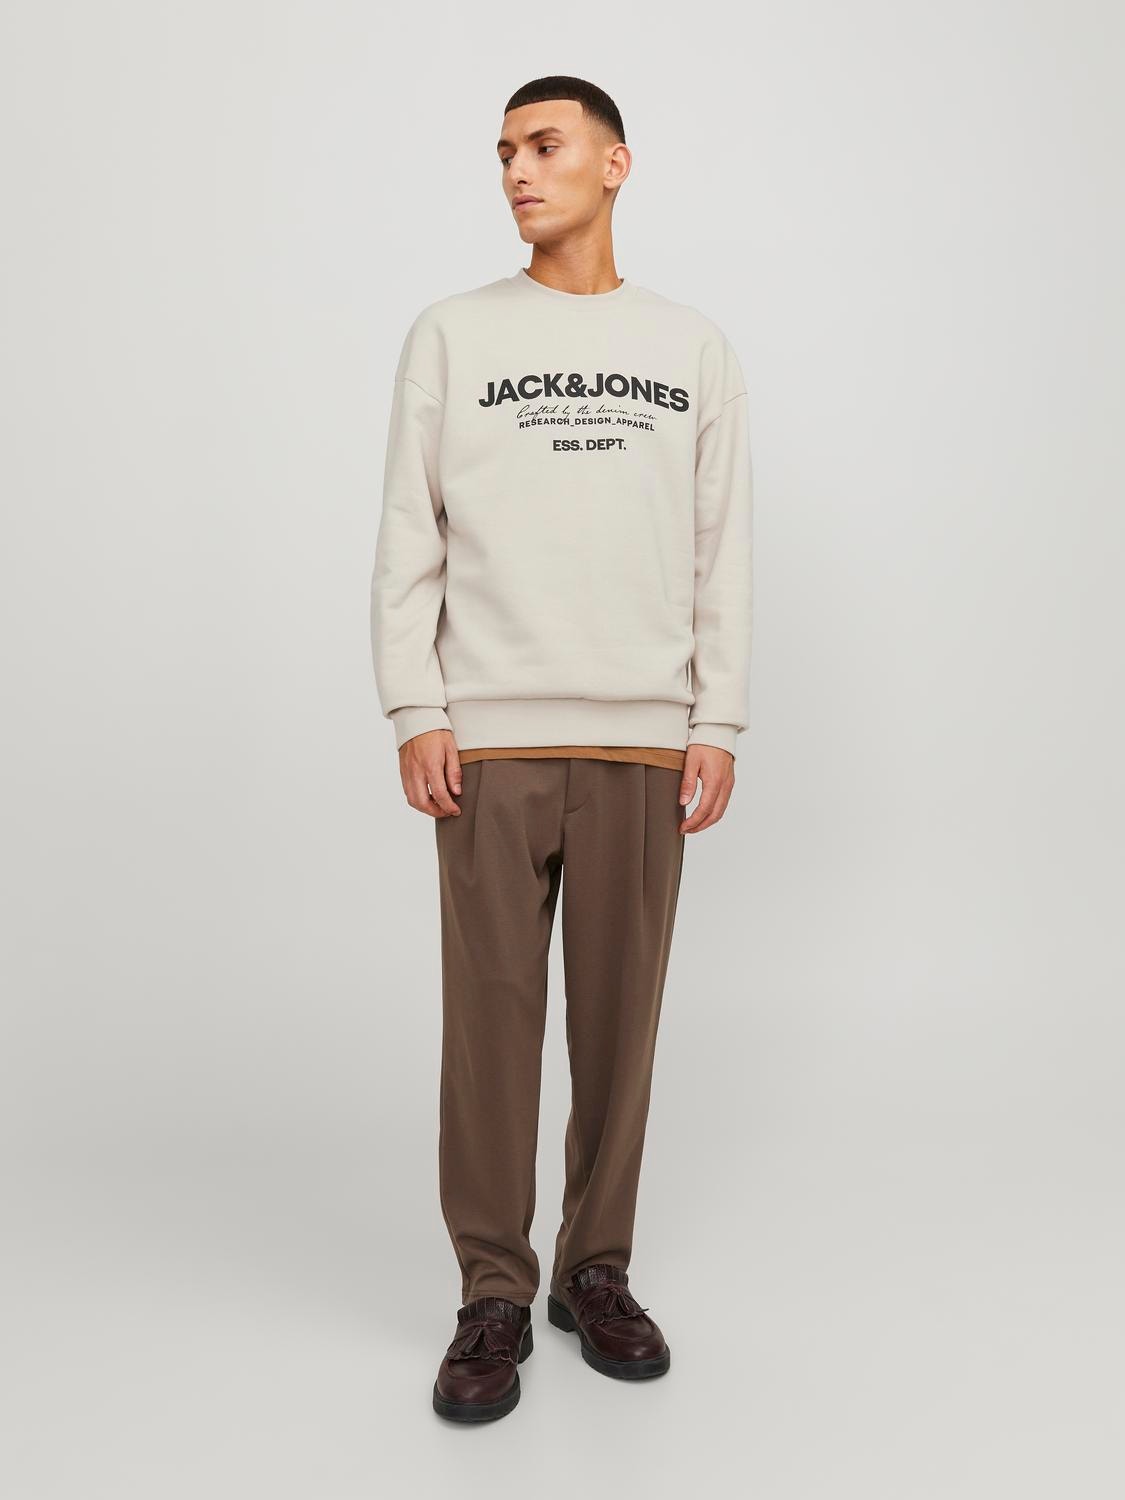 Jack & Jones Logo Crew neck Sweatshirt -Moonbeam - 12249273